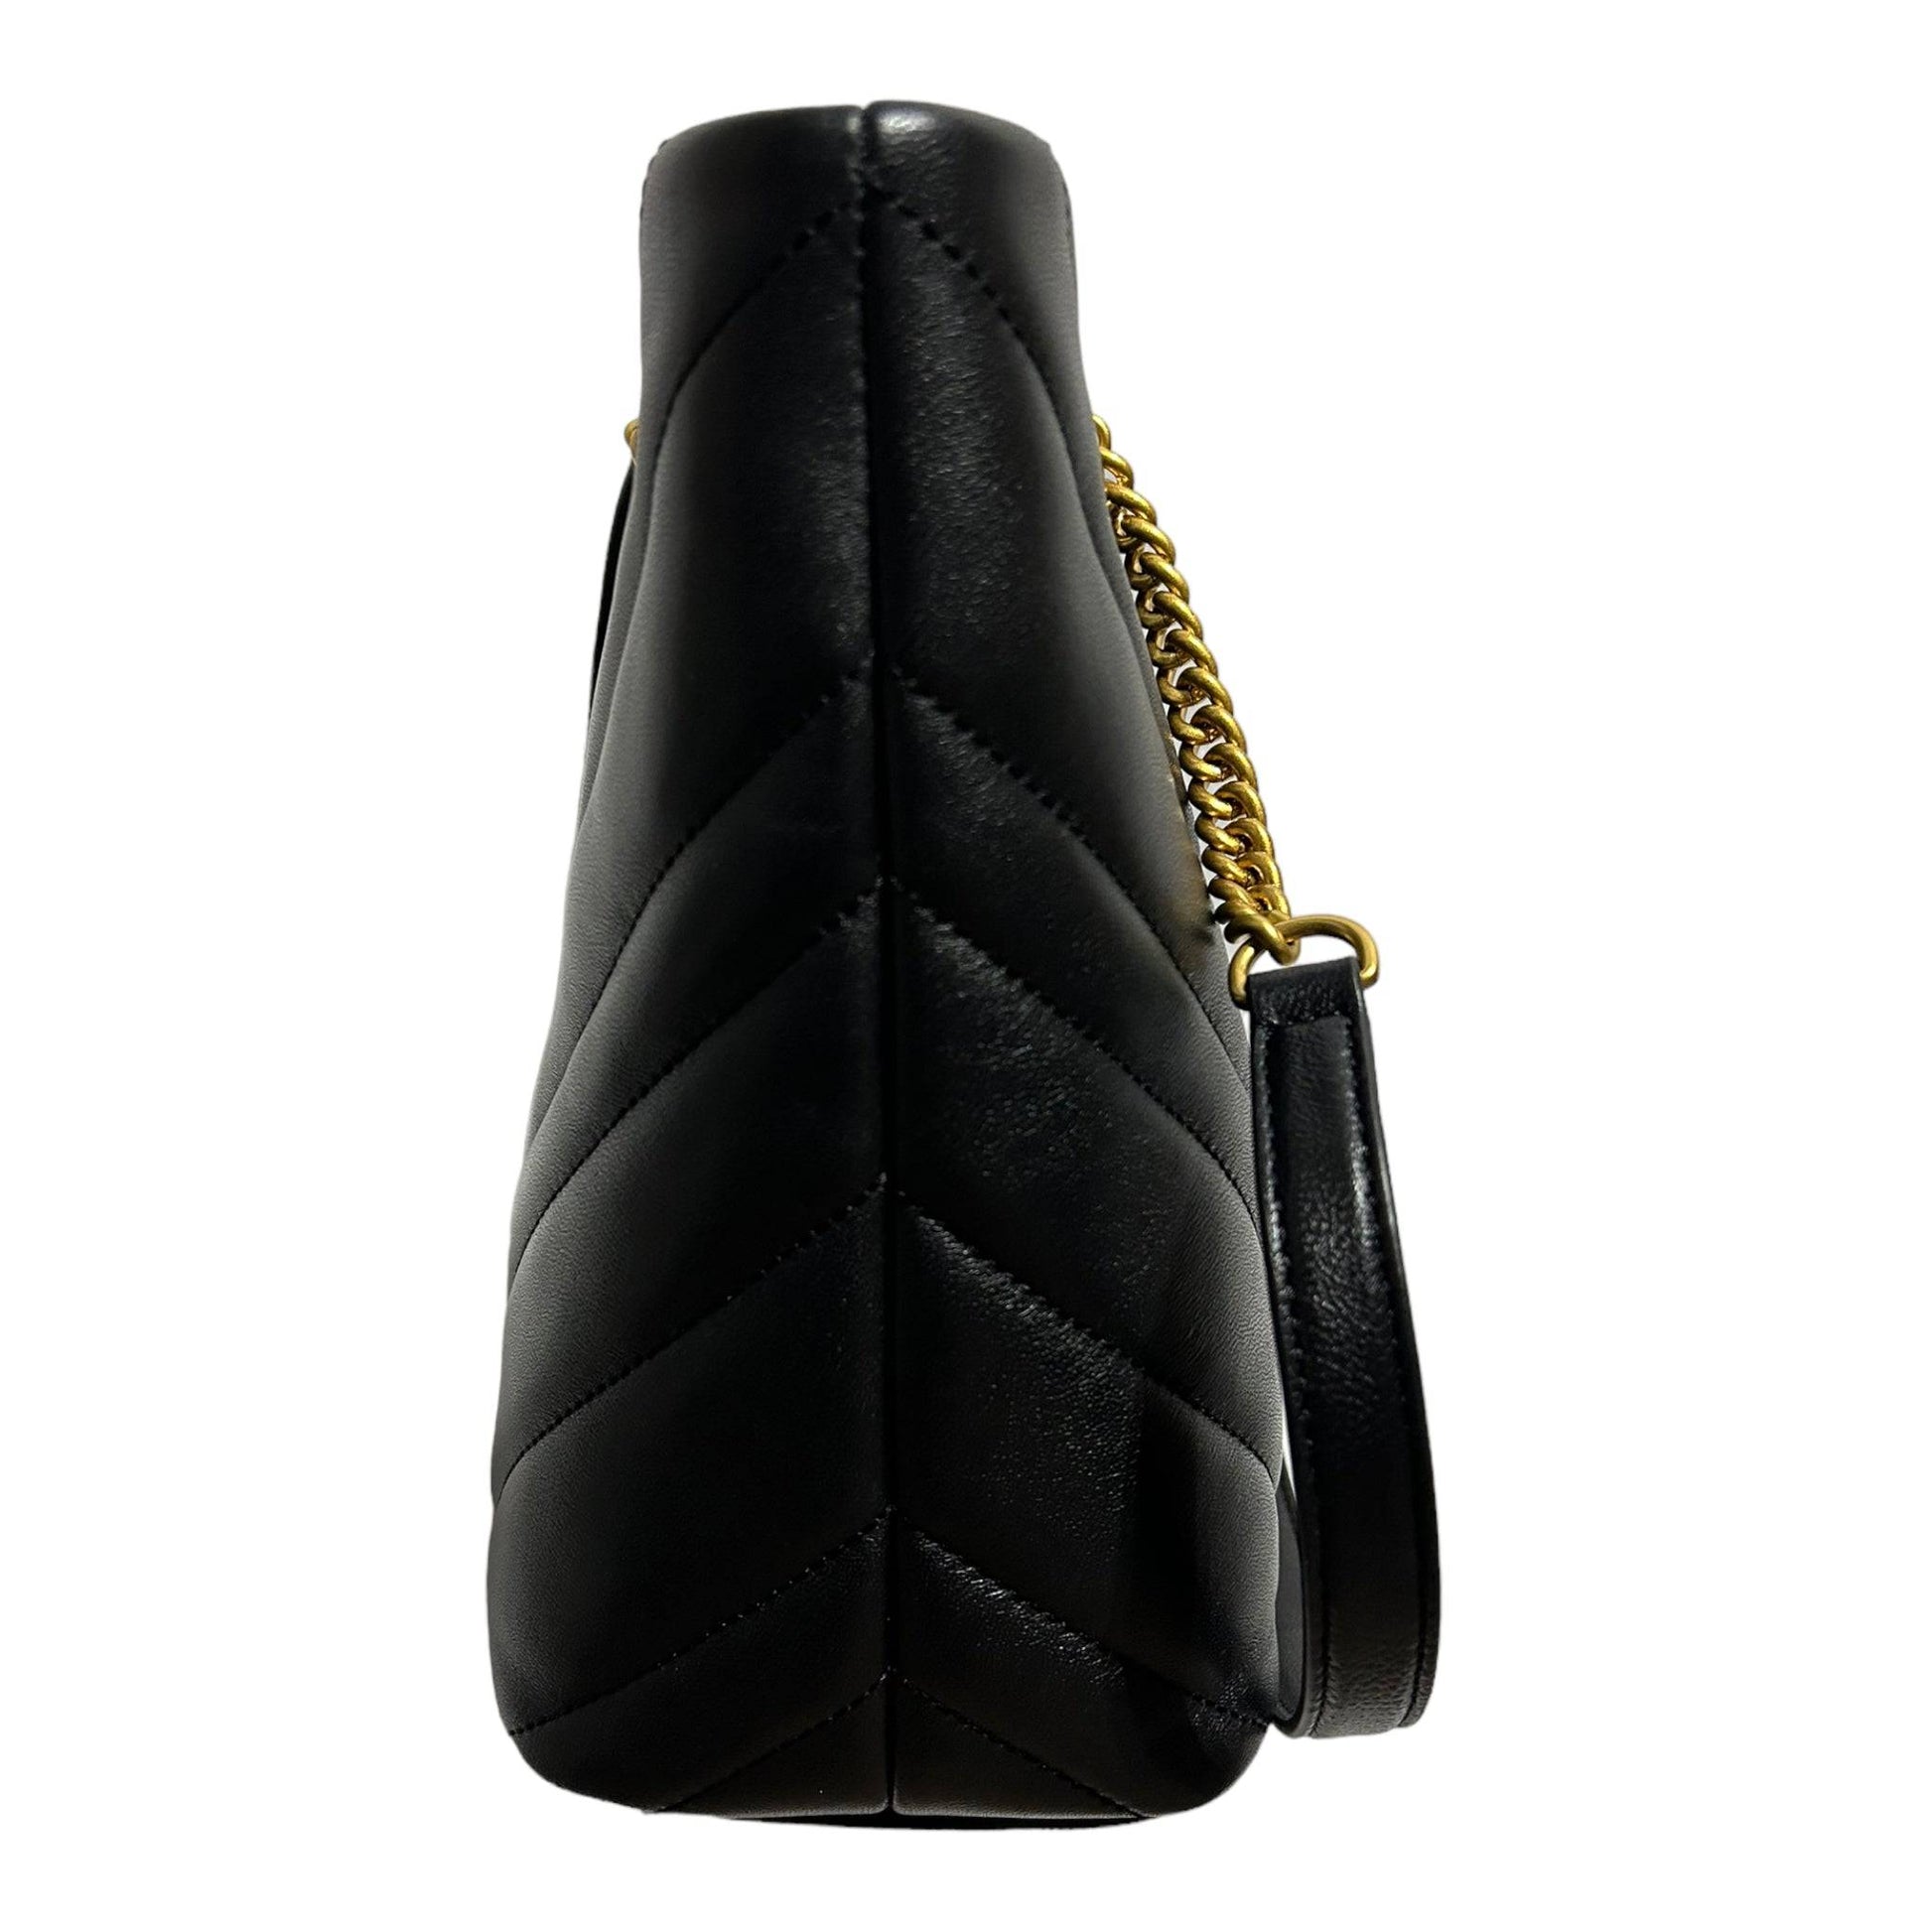 DKNY Vivian Medium Tote Handbag - Recurring.Life